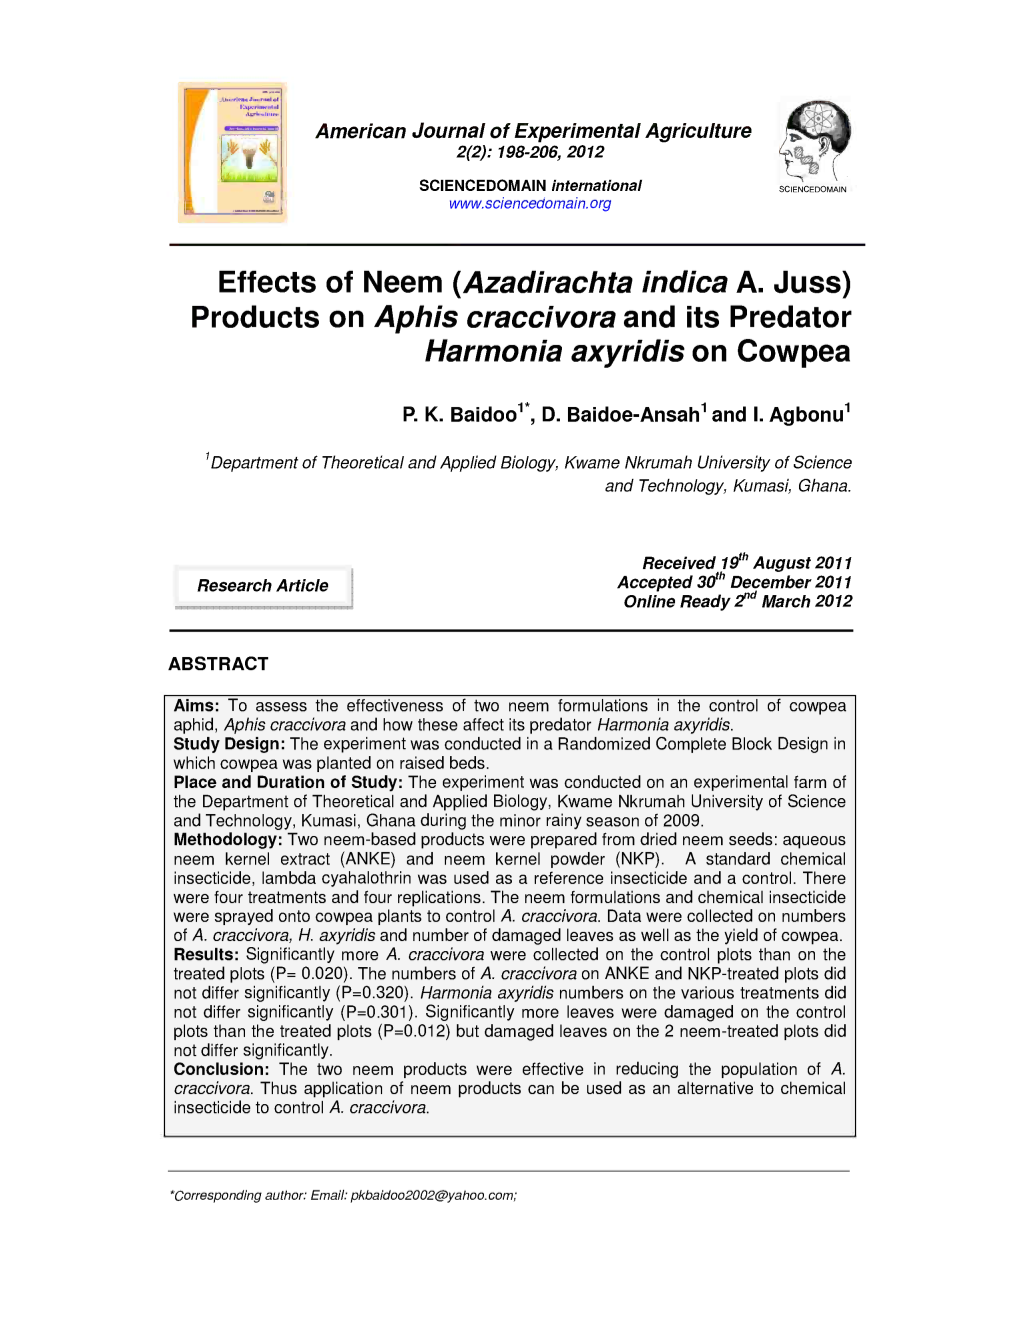 Products on Aphis Craccivora and Its Predator Harmonia Axyridis on Cowpea